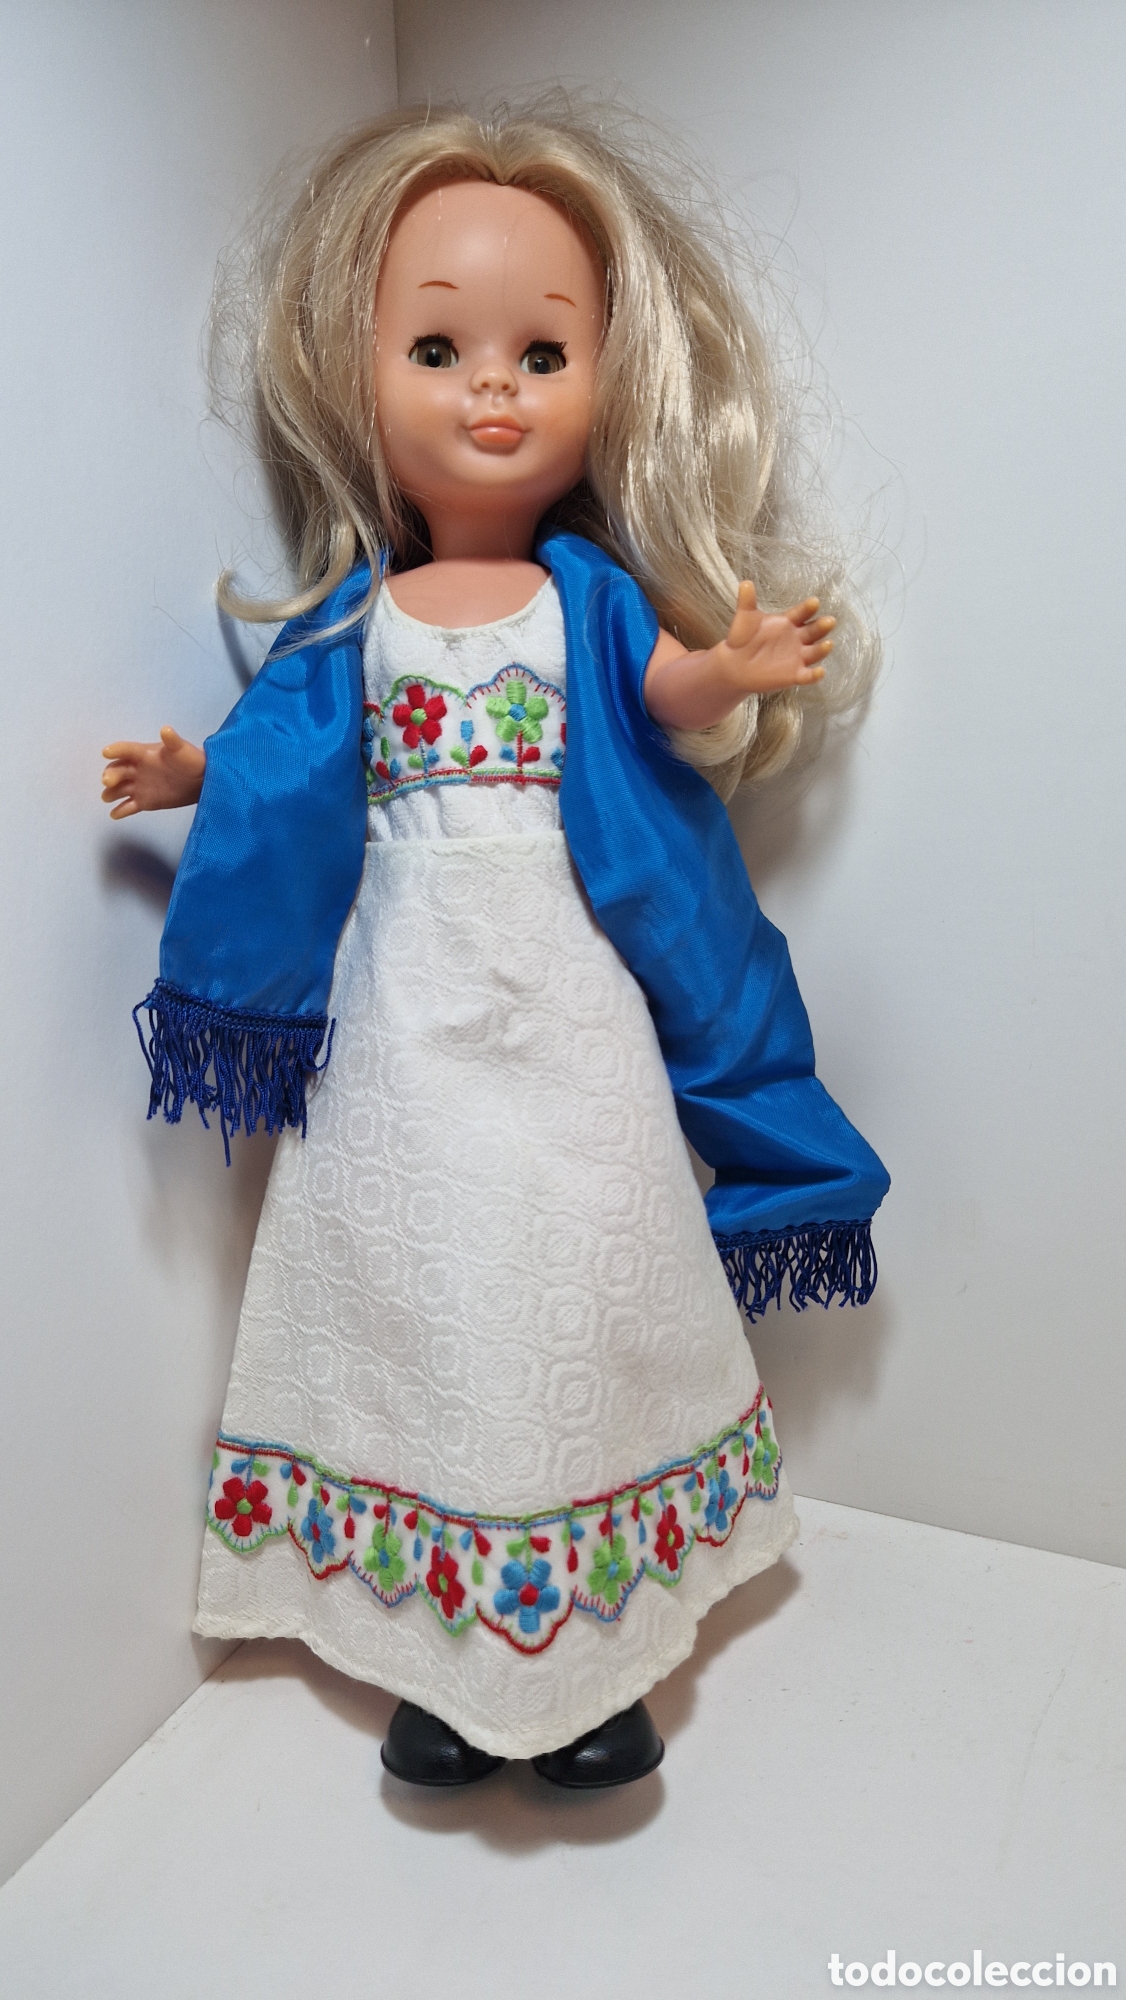 vestido años 70. vestido largo - Dresses and accessories for Nancy Lucas dolls on todocoleccion